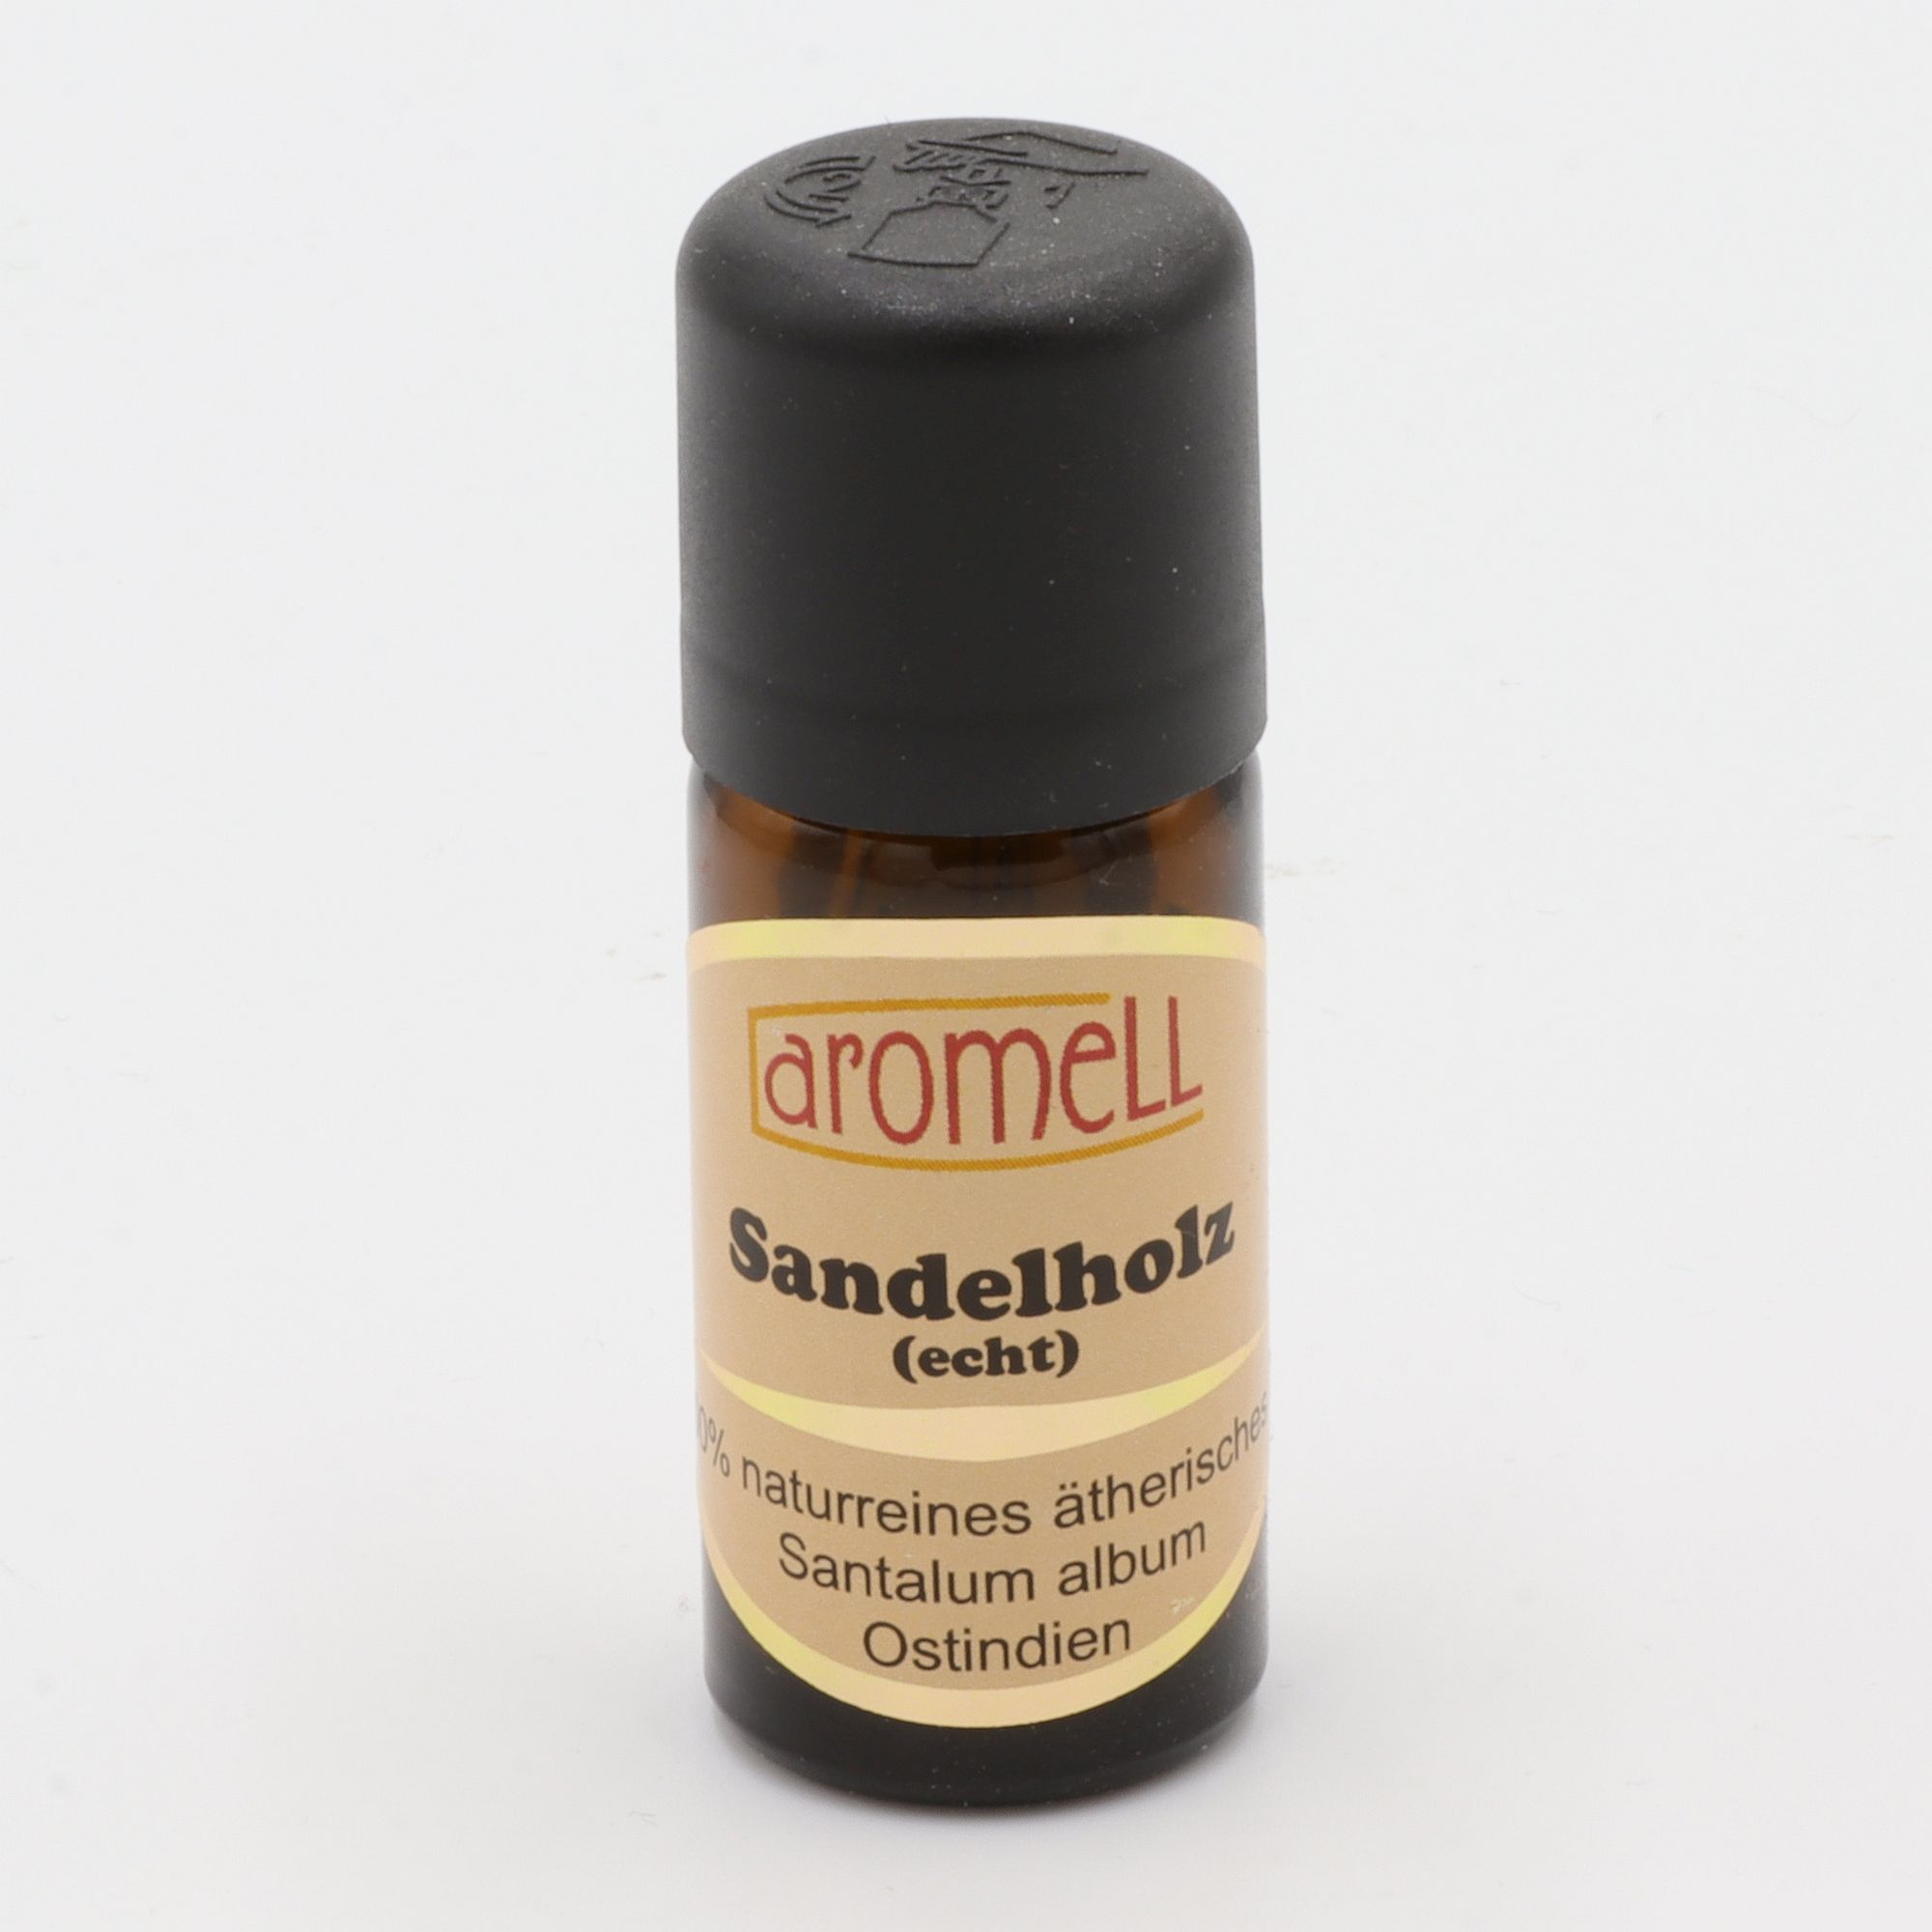 Ätherisches Öl - Aromell - Sandelholz (echt) - 100% naturrein - Santalum Album aus Ostindien - aromatischer Raumduft für Dein Wohlbefinden - Glas mit Tropfendosierung